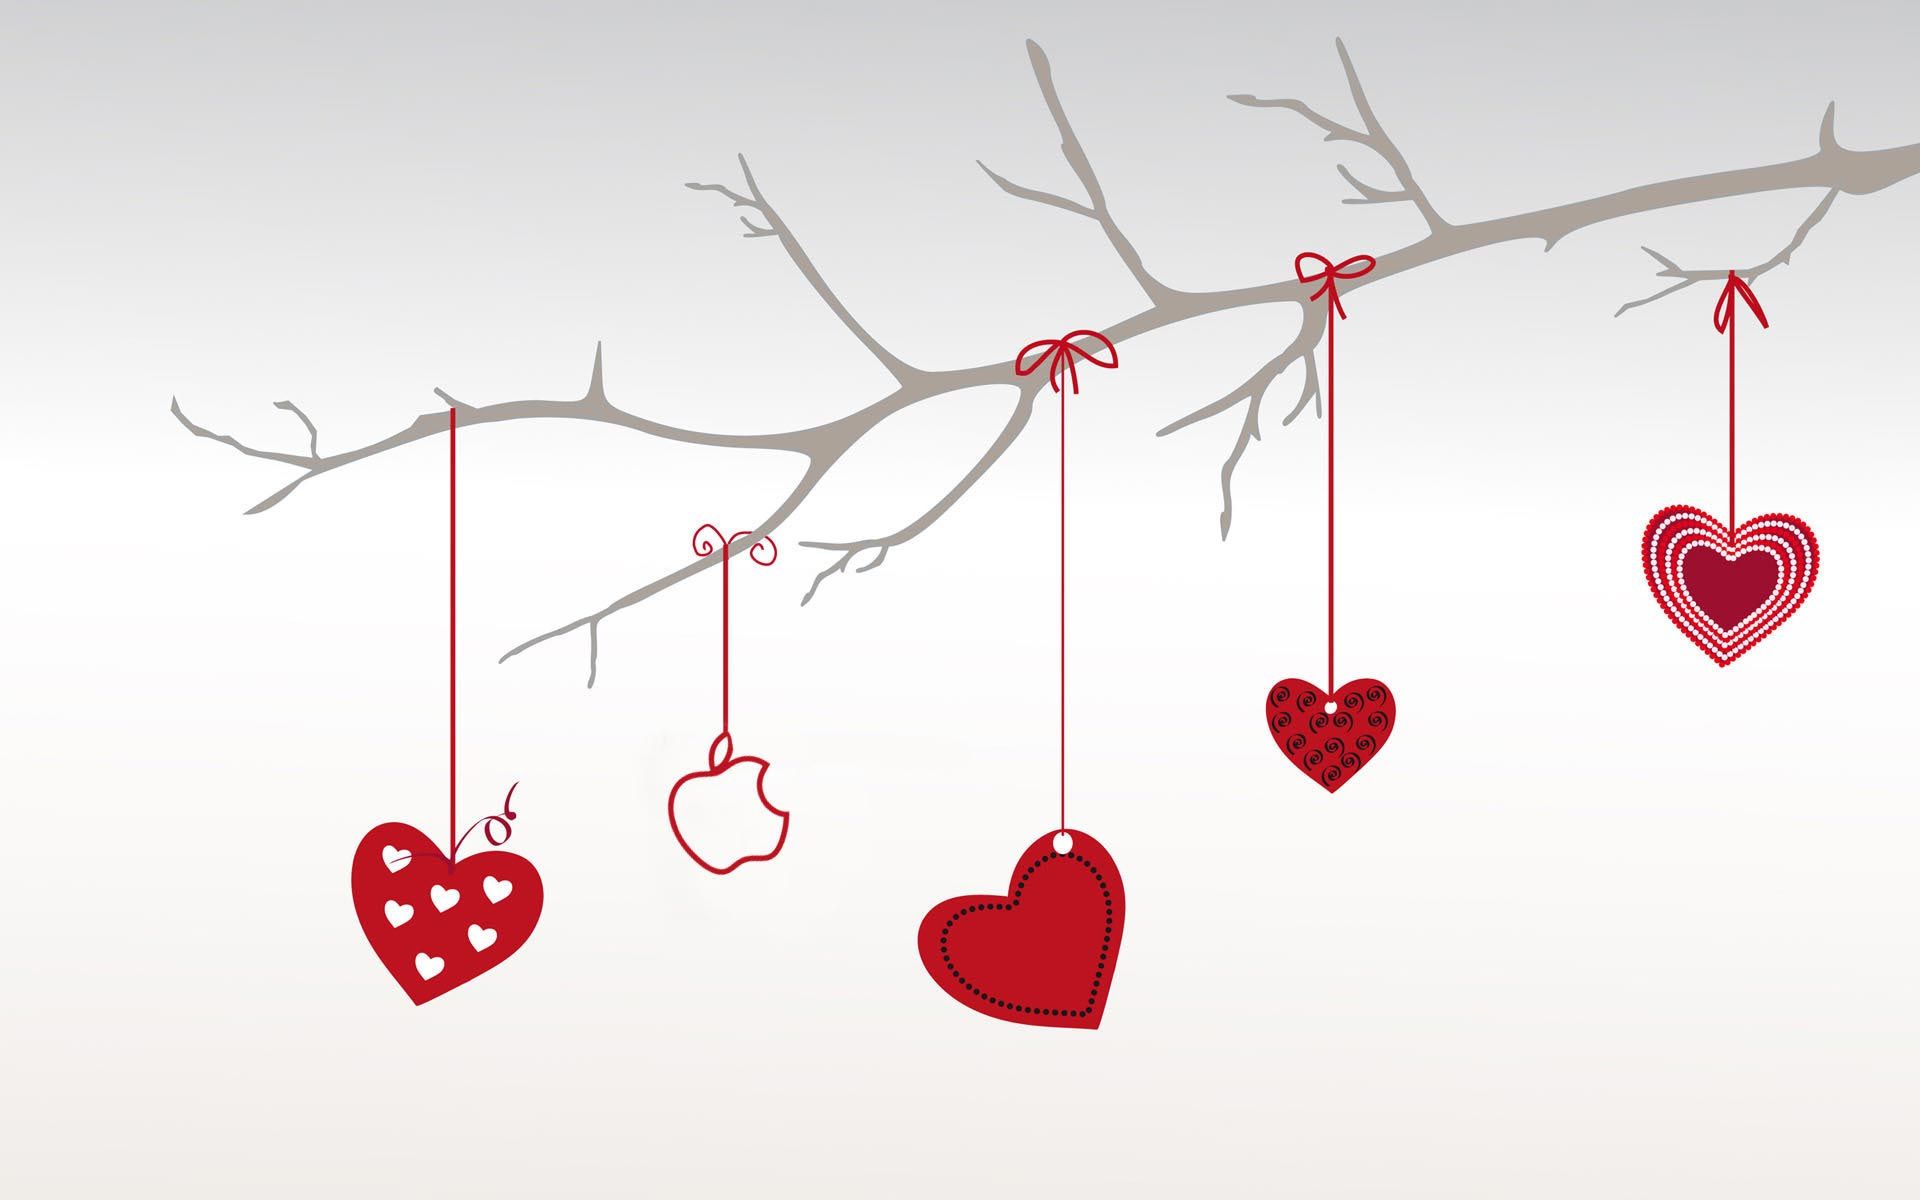 Hình nền Valentine đẹp lung linh để chào đón ngày lễ tình nhân sắp đến! Hãy xem ngay để tô điểm màn hình điện thoại hay máy tính của bạn với những hình ảnh đầy ý nghĩa và tình cảm.